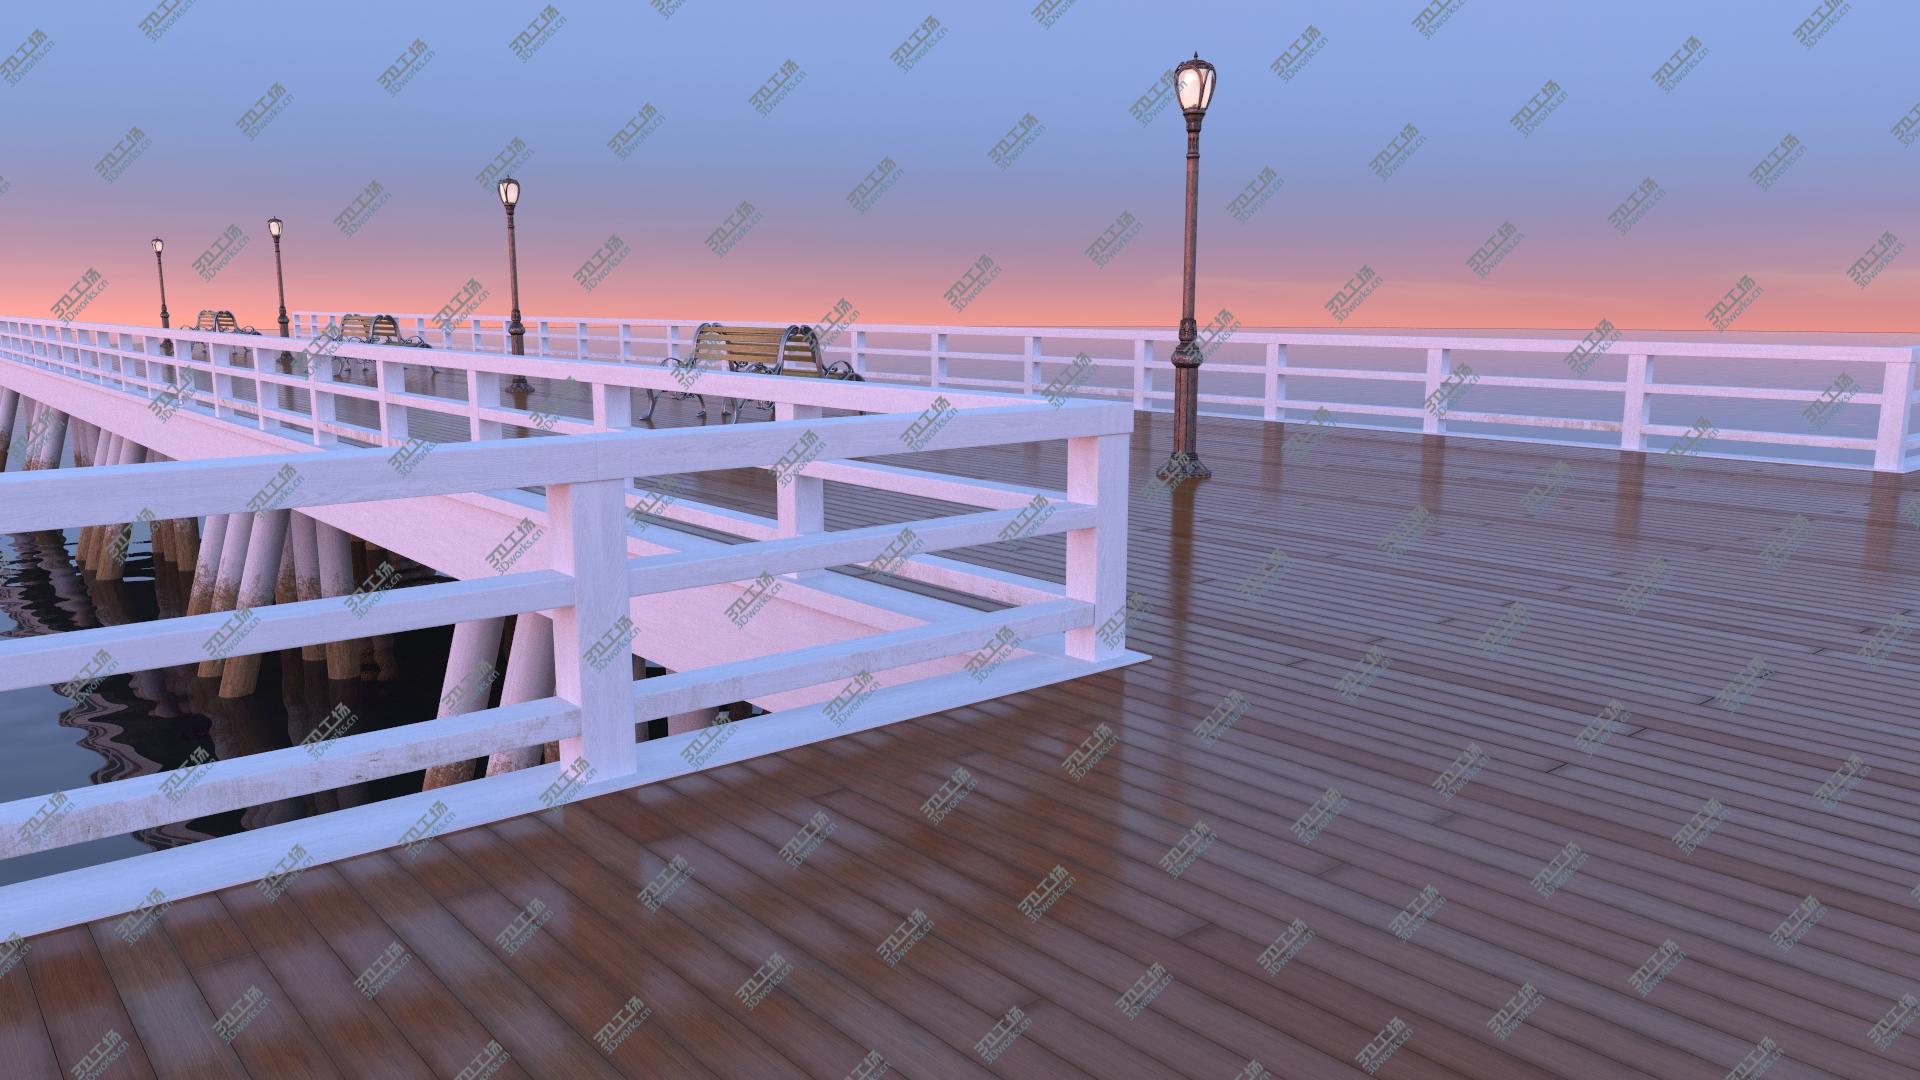 images/goods_img/202104091/Wooden Pier Bridge model/3.jpg